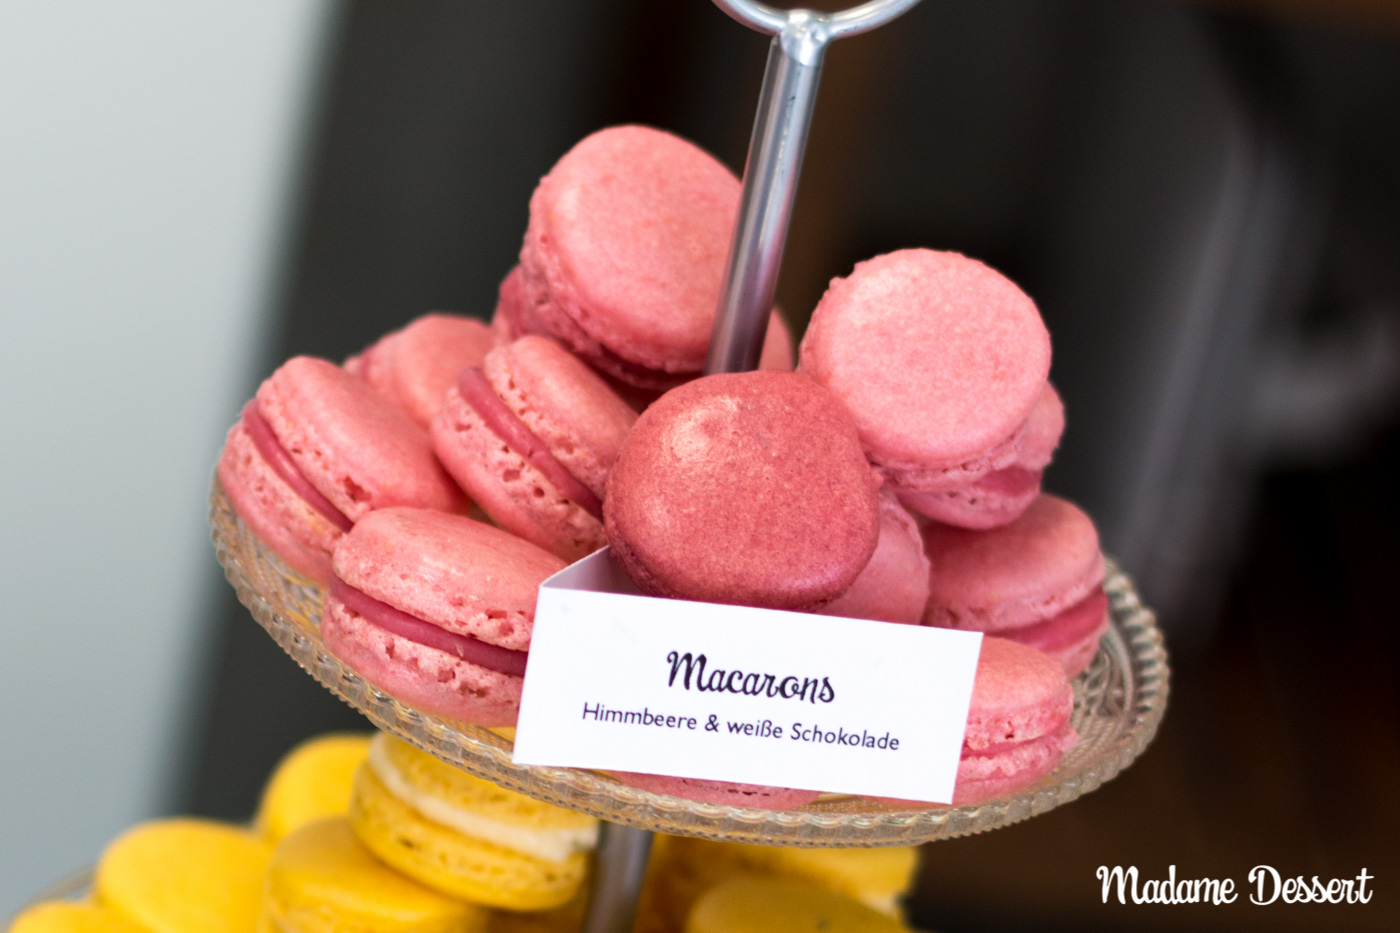 Macaron Füllung mit Himbeere &amp; weißer Schokolade | Madame Dessert